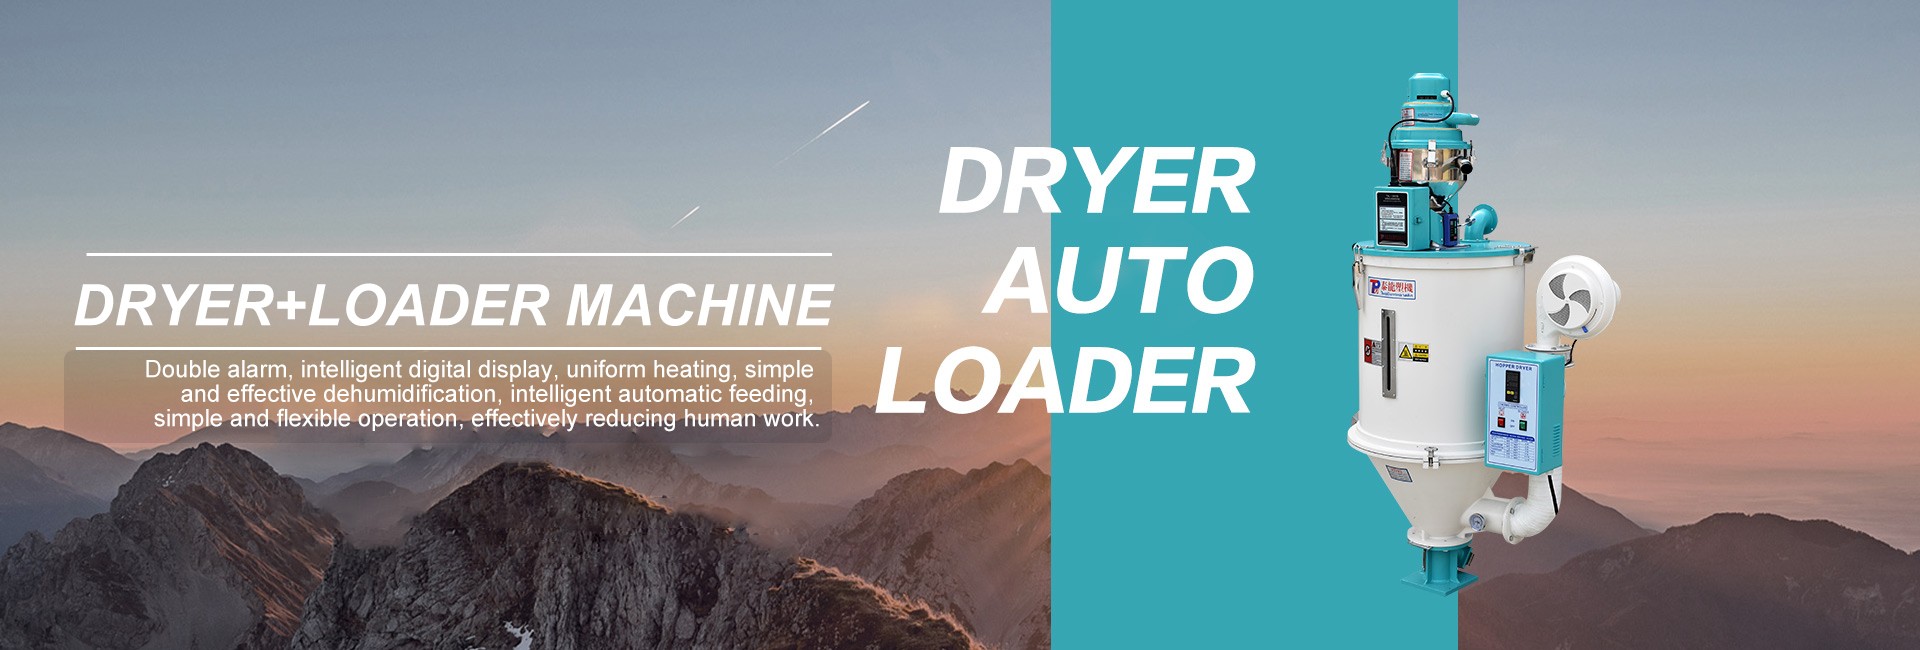 Dryer+Auto Loader